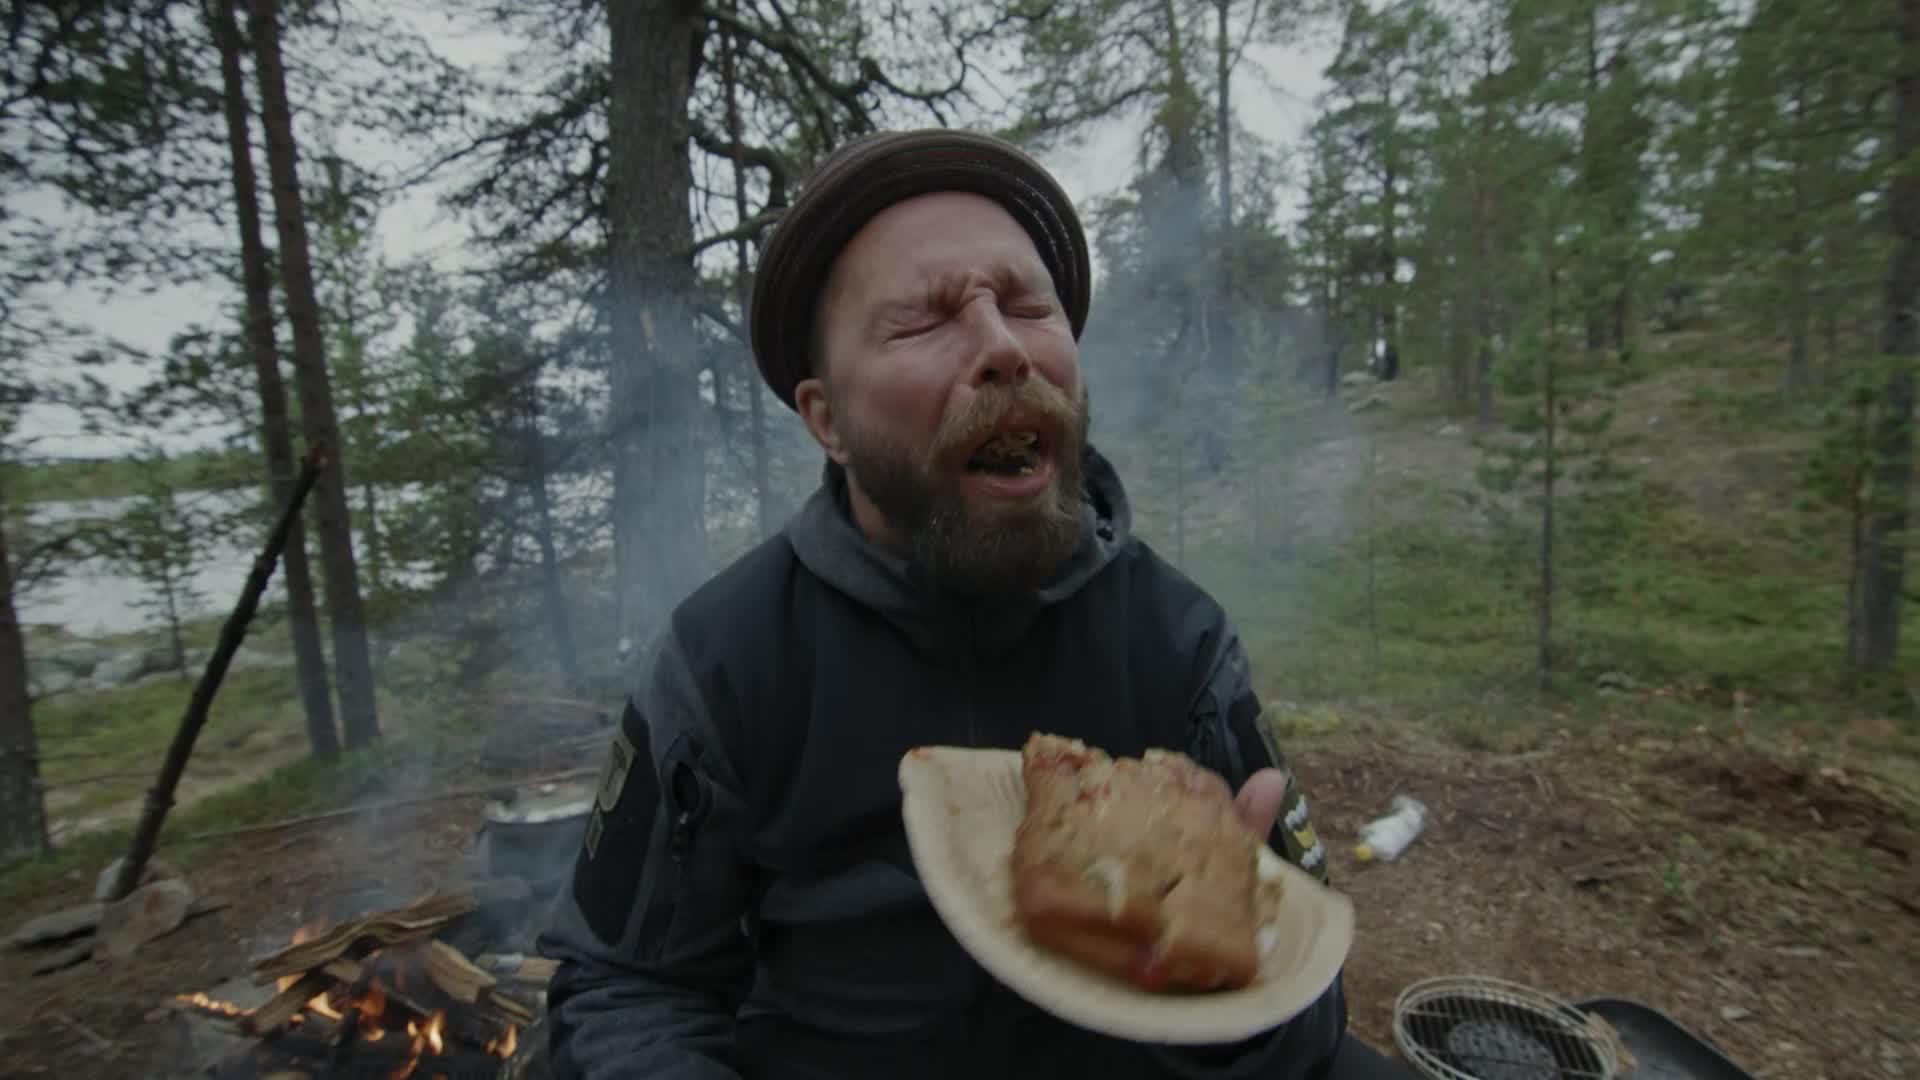 Tunna kohtaa Madventuresissa inhokkiruokansa – tavallinen suomalainen grilliherkku saa aikaan rajun reaktion! 